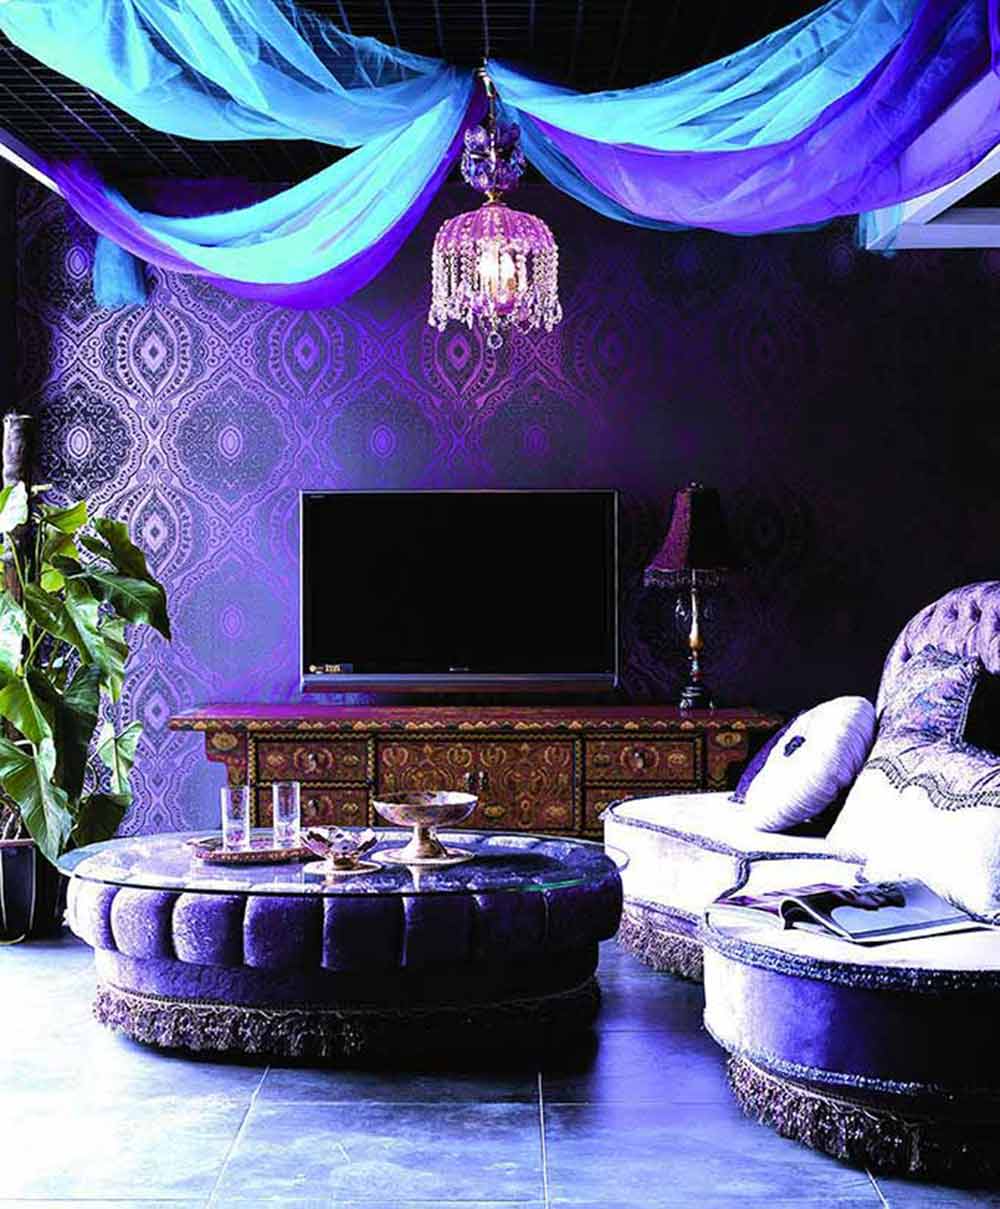 休息室倾向于蓝色调，将蓝色的浪漫高贵与紫色的优雅神秘完美结合在了一起，氛围梦幻而惬意。